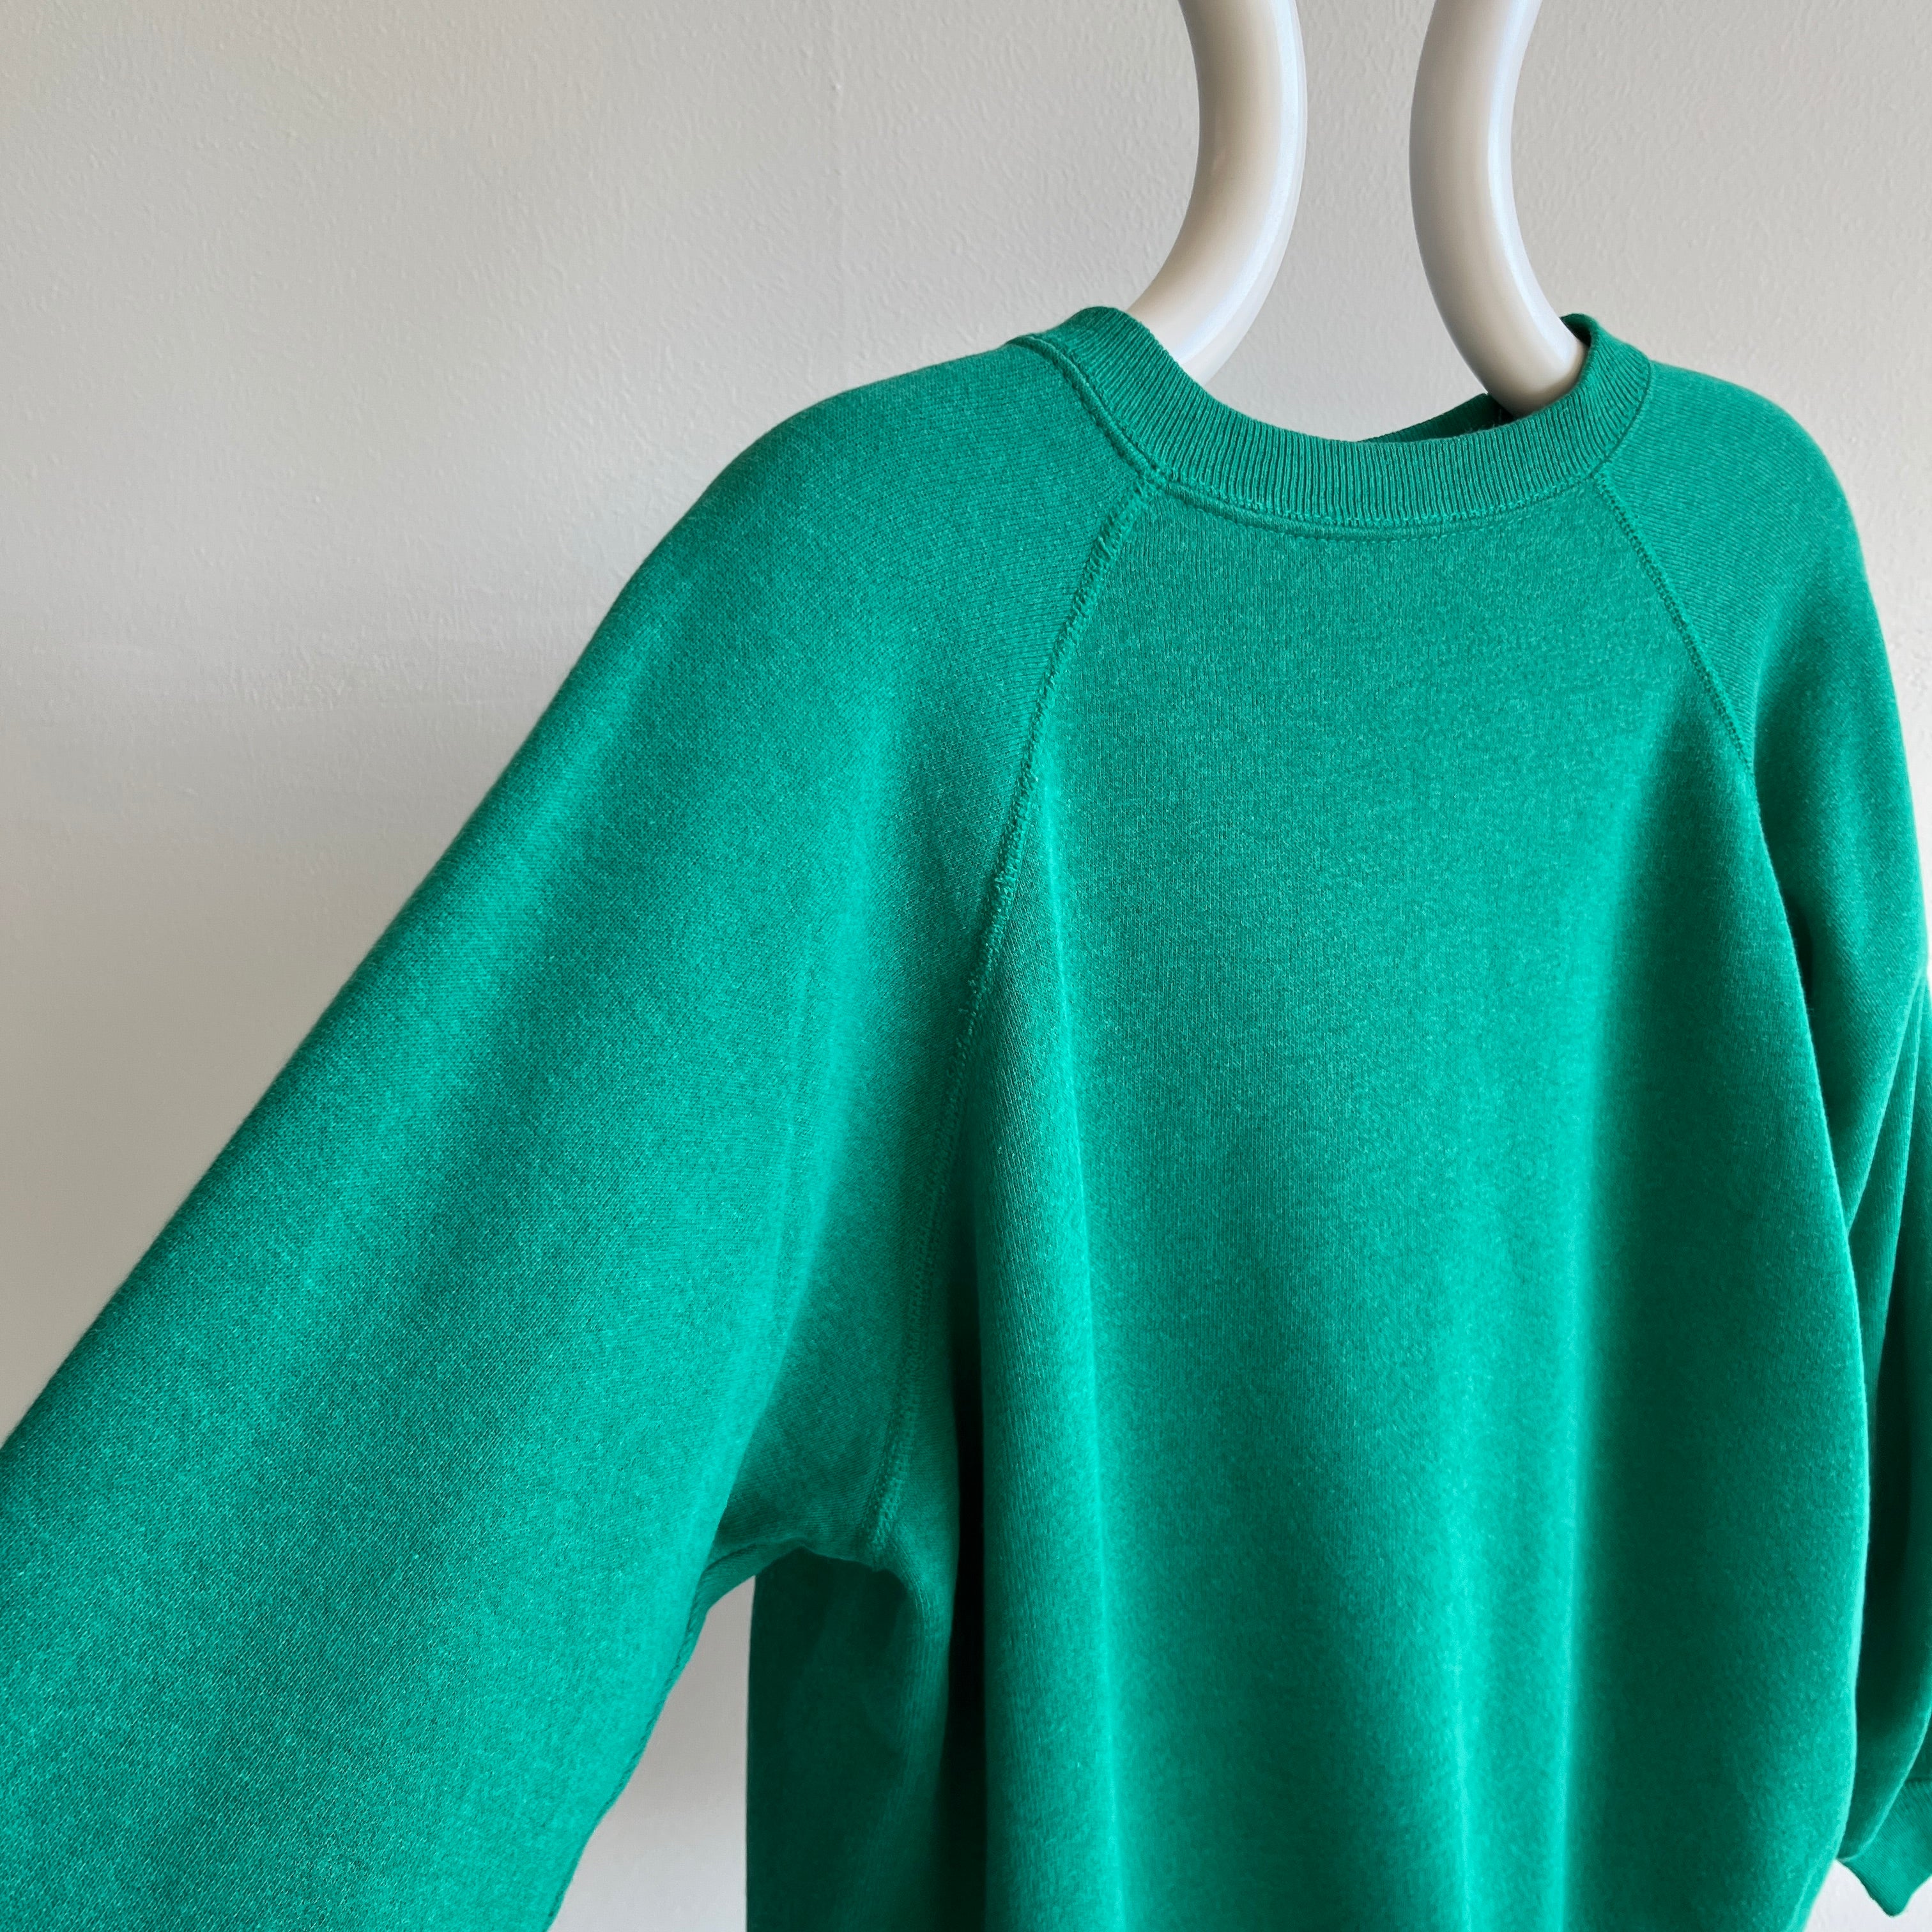 1980/90s HHW Faded Kelly Green Sweatshirt